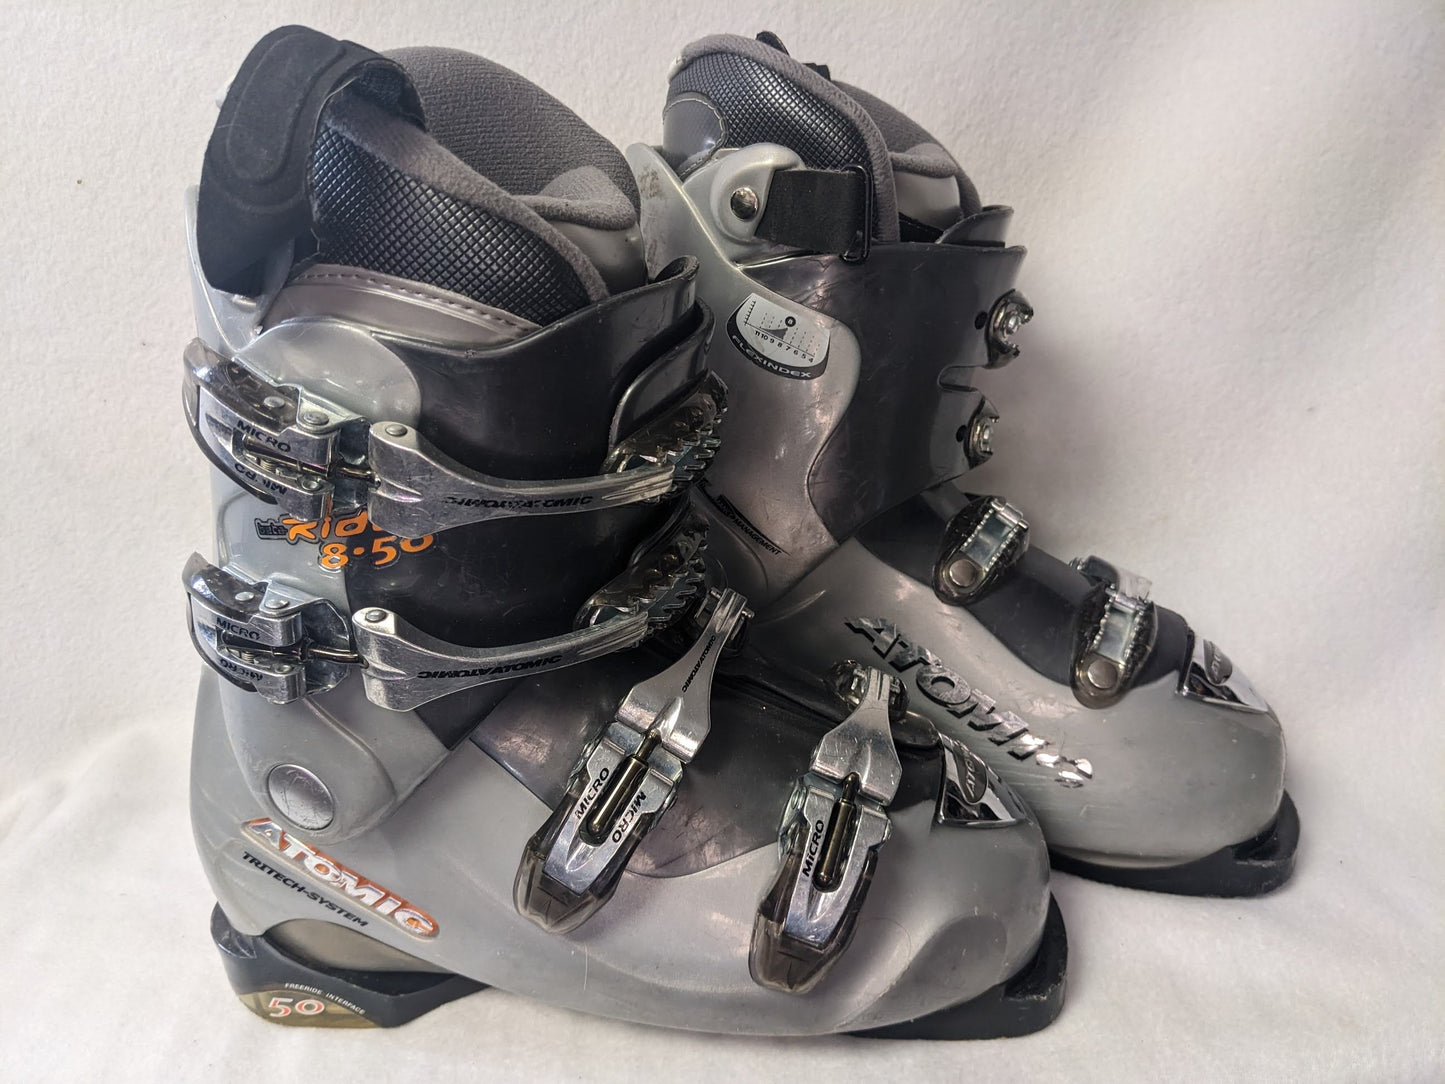 Atomic Beta Ride 8.50 Ski Boots Size Mondo 25.5 Color Gray Condition Used